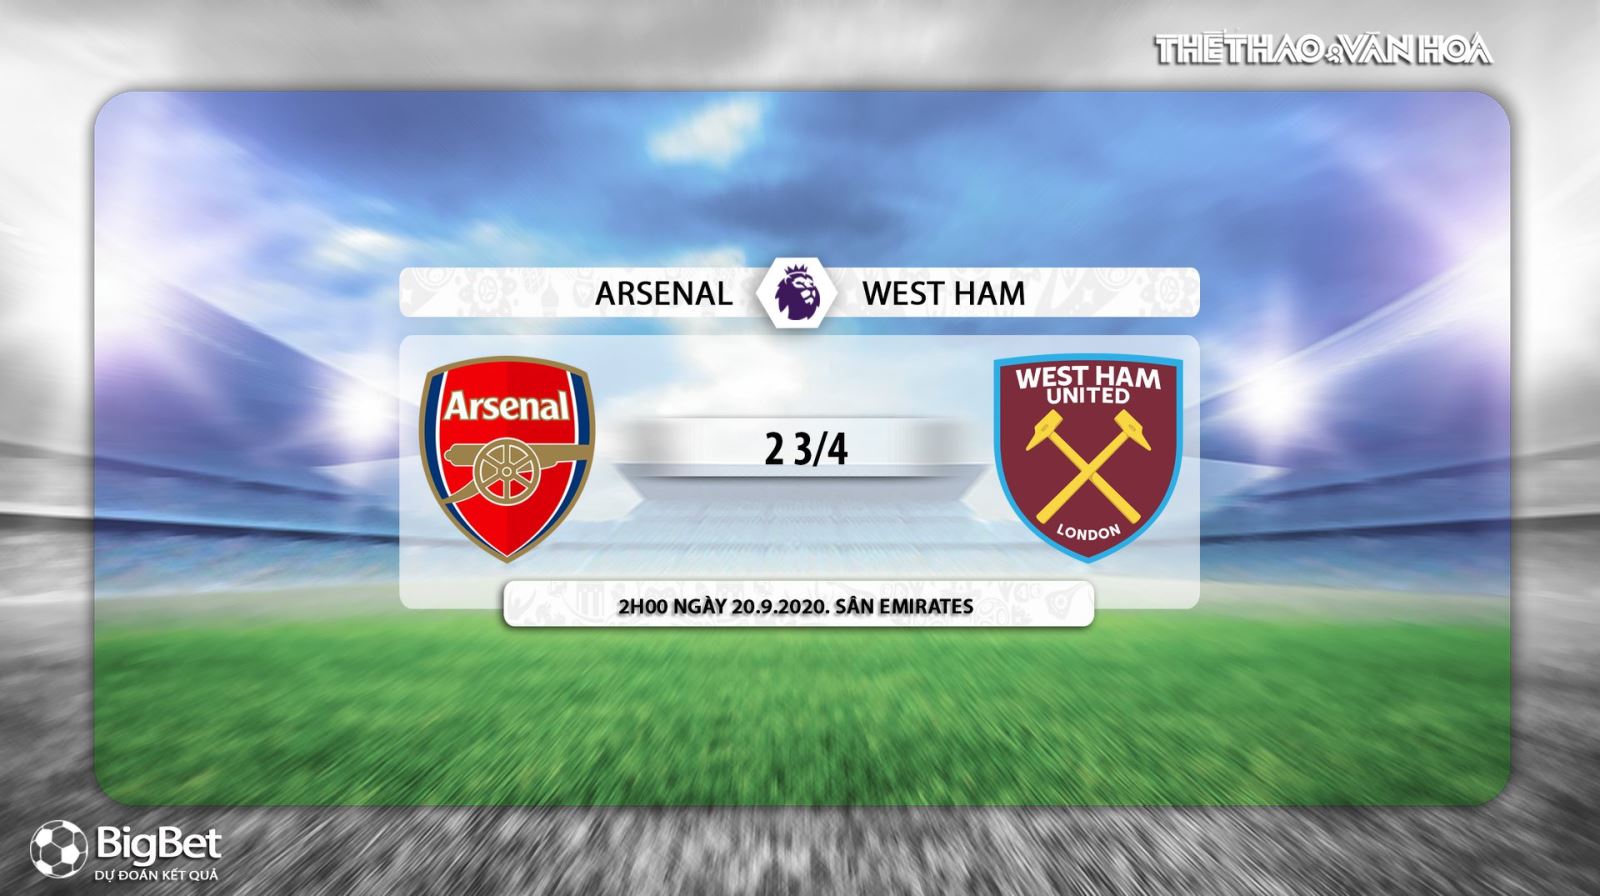 Arsenal vs West Ham, Arsenal, West Ham, trực tiếp bóng đá, nhận định bóng đá, kèo bóng đá, kèo Arsenal vs West Ham, nhận định bóng đá Arsenal vs West Ham, nhận định Arsenal vs West Ham